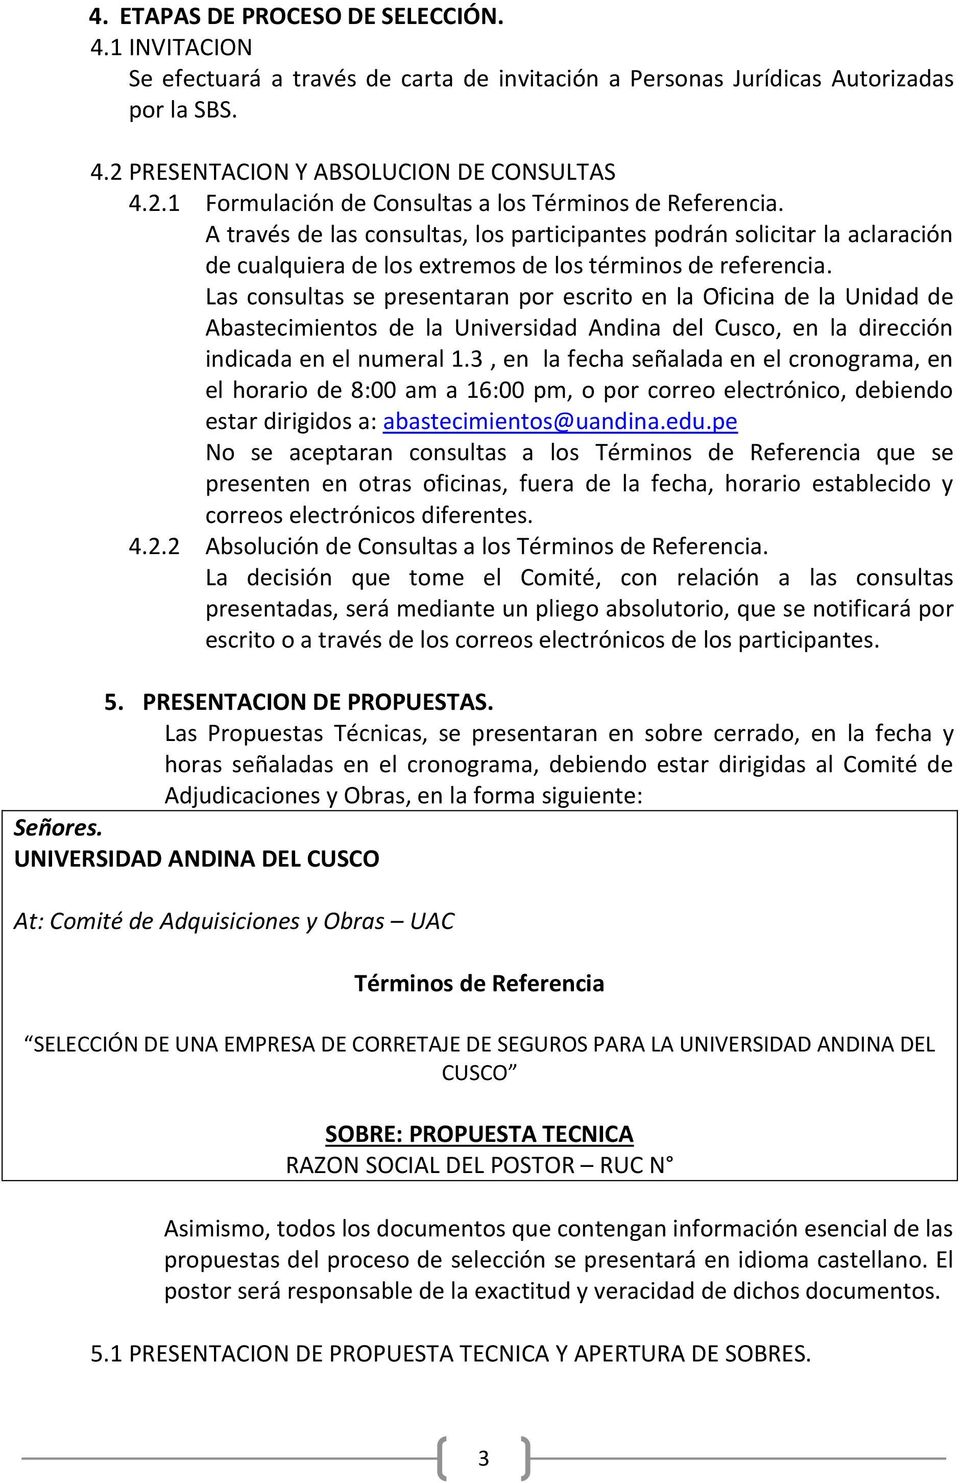 Las consultas se presentaran por escrito en la Oficina de la Unidad de Abastecimientos de la Universidad Andina del Cusco, en la dirección indicada en el numeral 1.